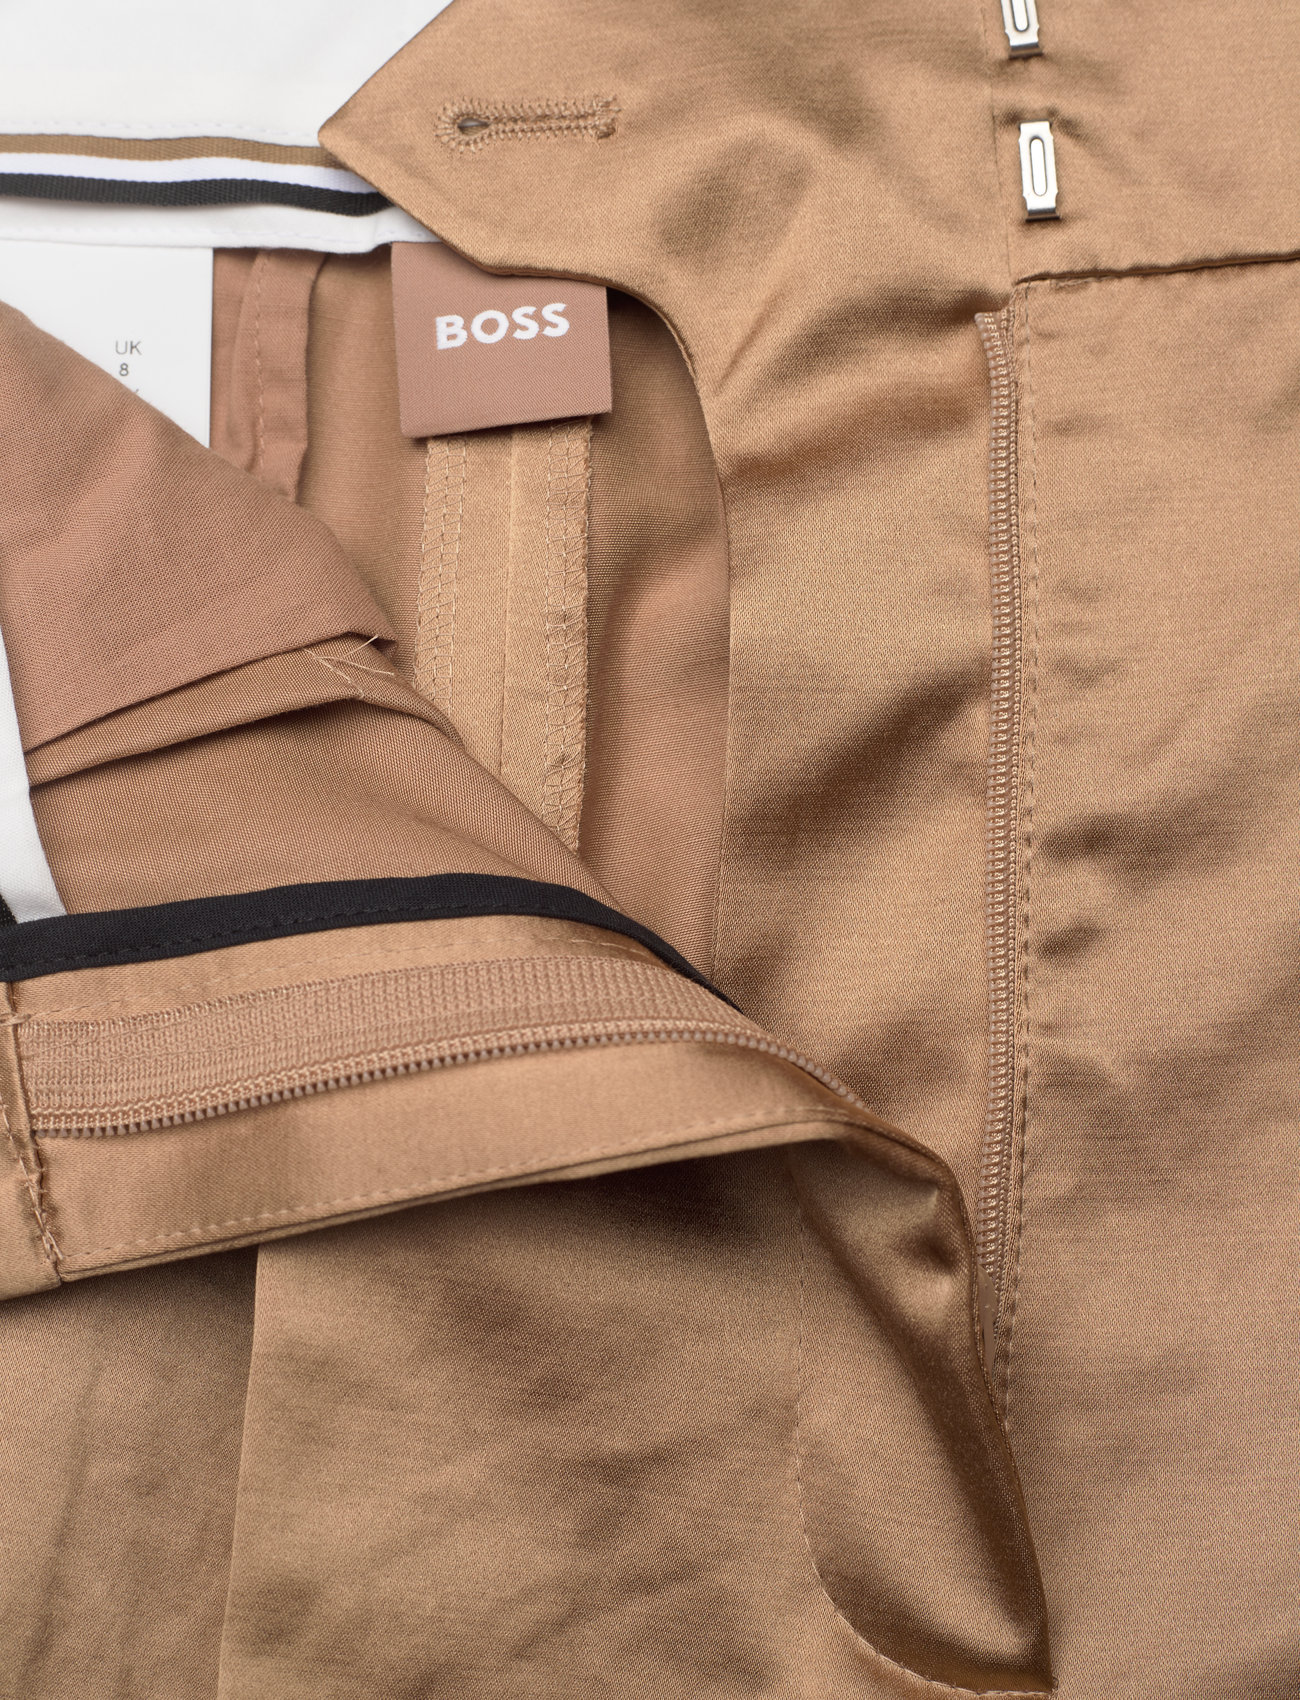 BOSS - Tacuri - cargo pants - medium beige - 1